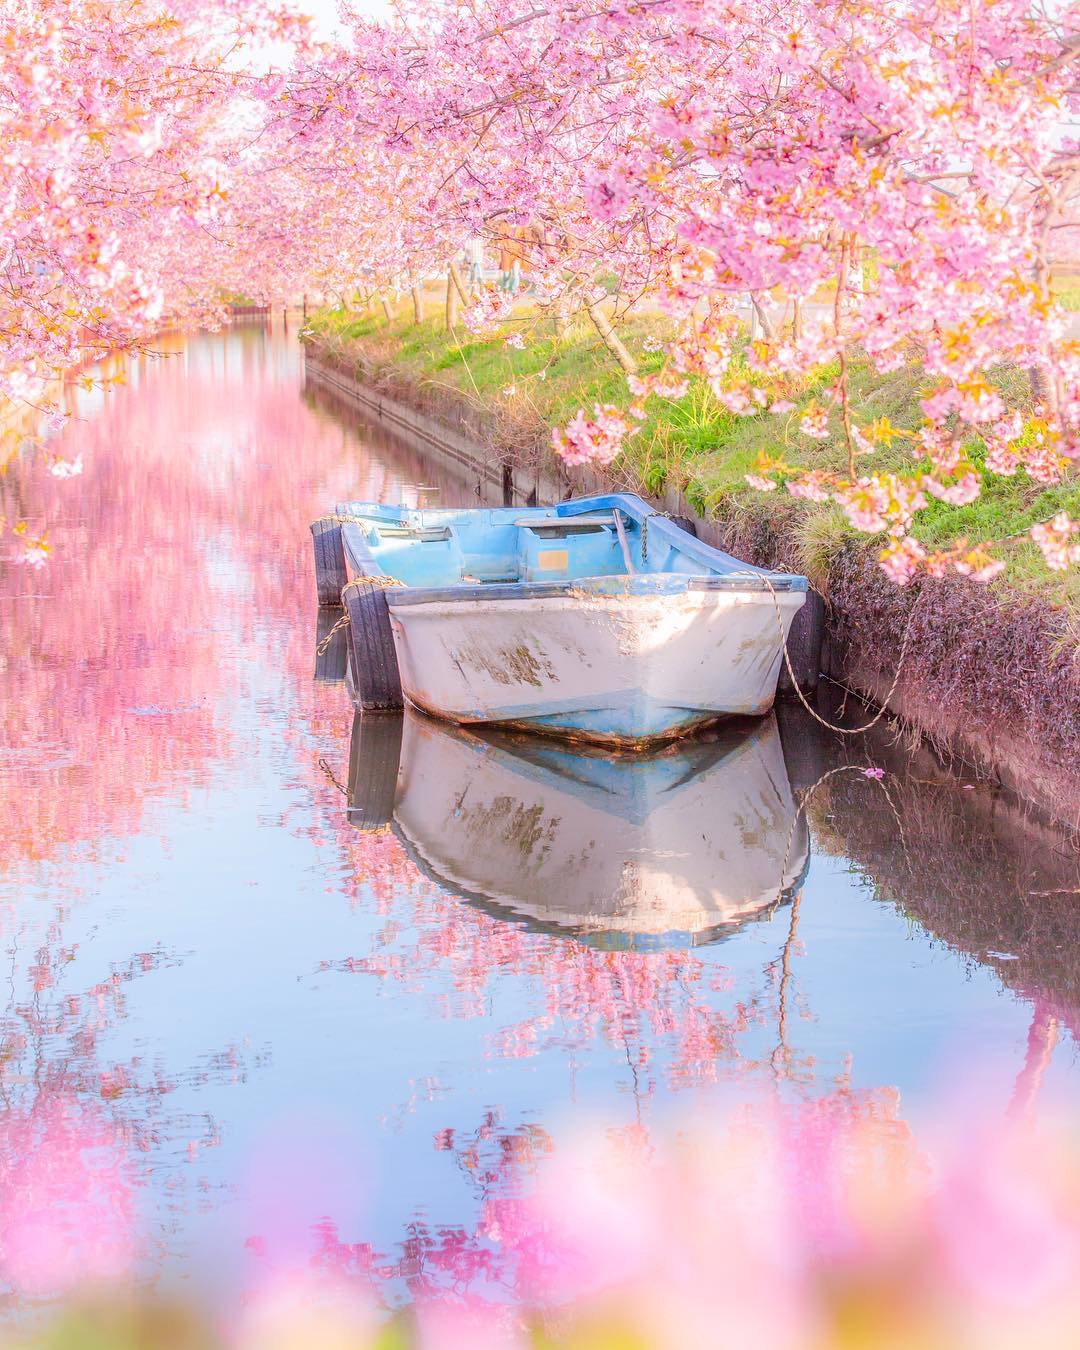 2019樱花季即将到来！盘点国内10个赏樱圣地 - 马蜂窝